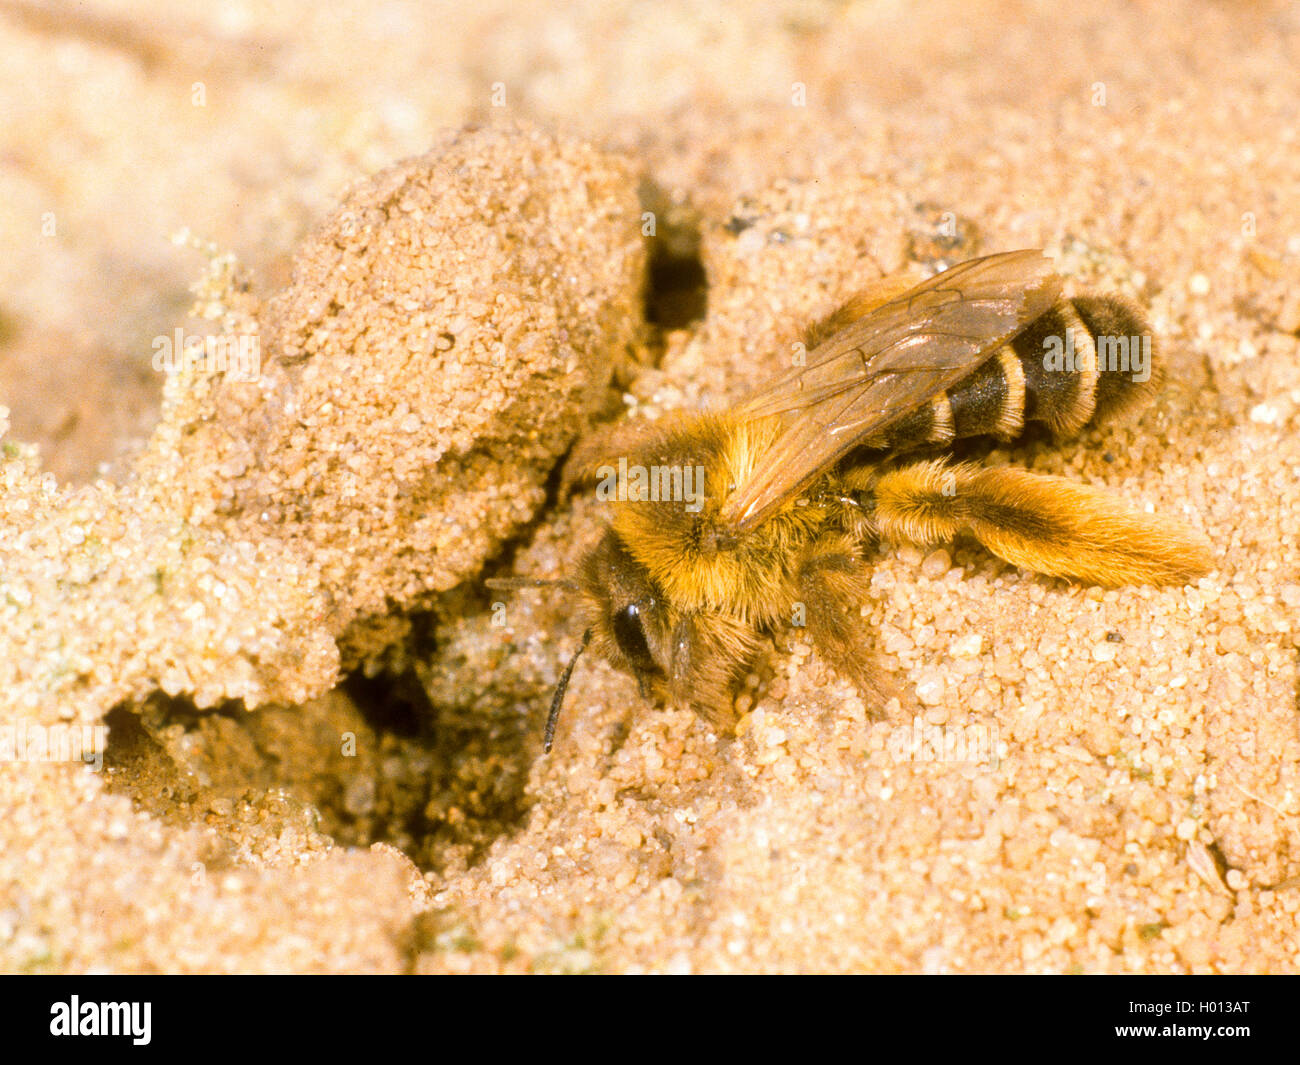 Dasypoda hirtipes (Dasypoda hirtipes), Female digging nest, Germany Stock Photo